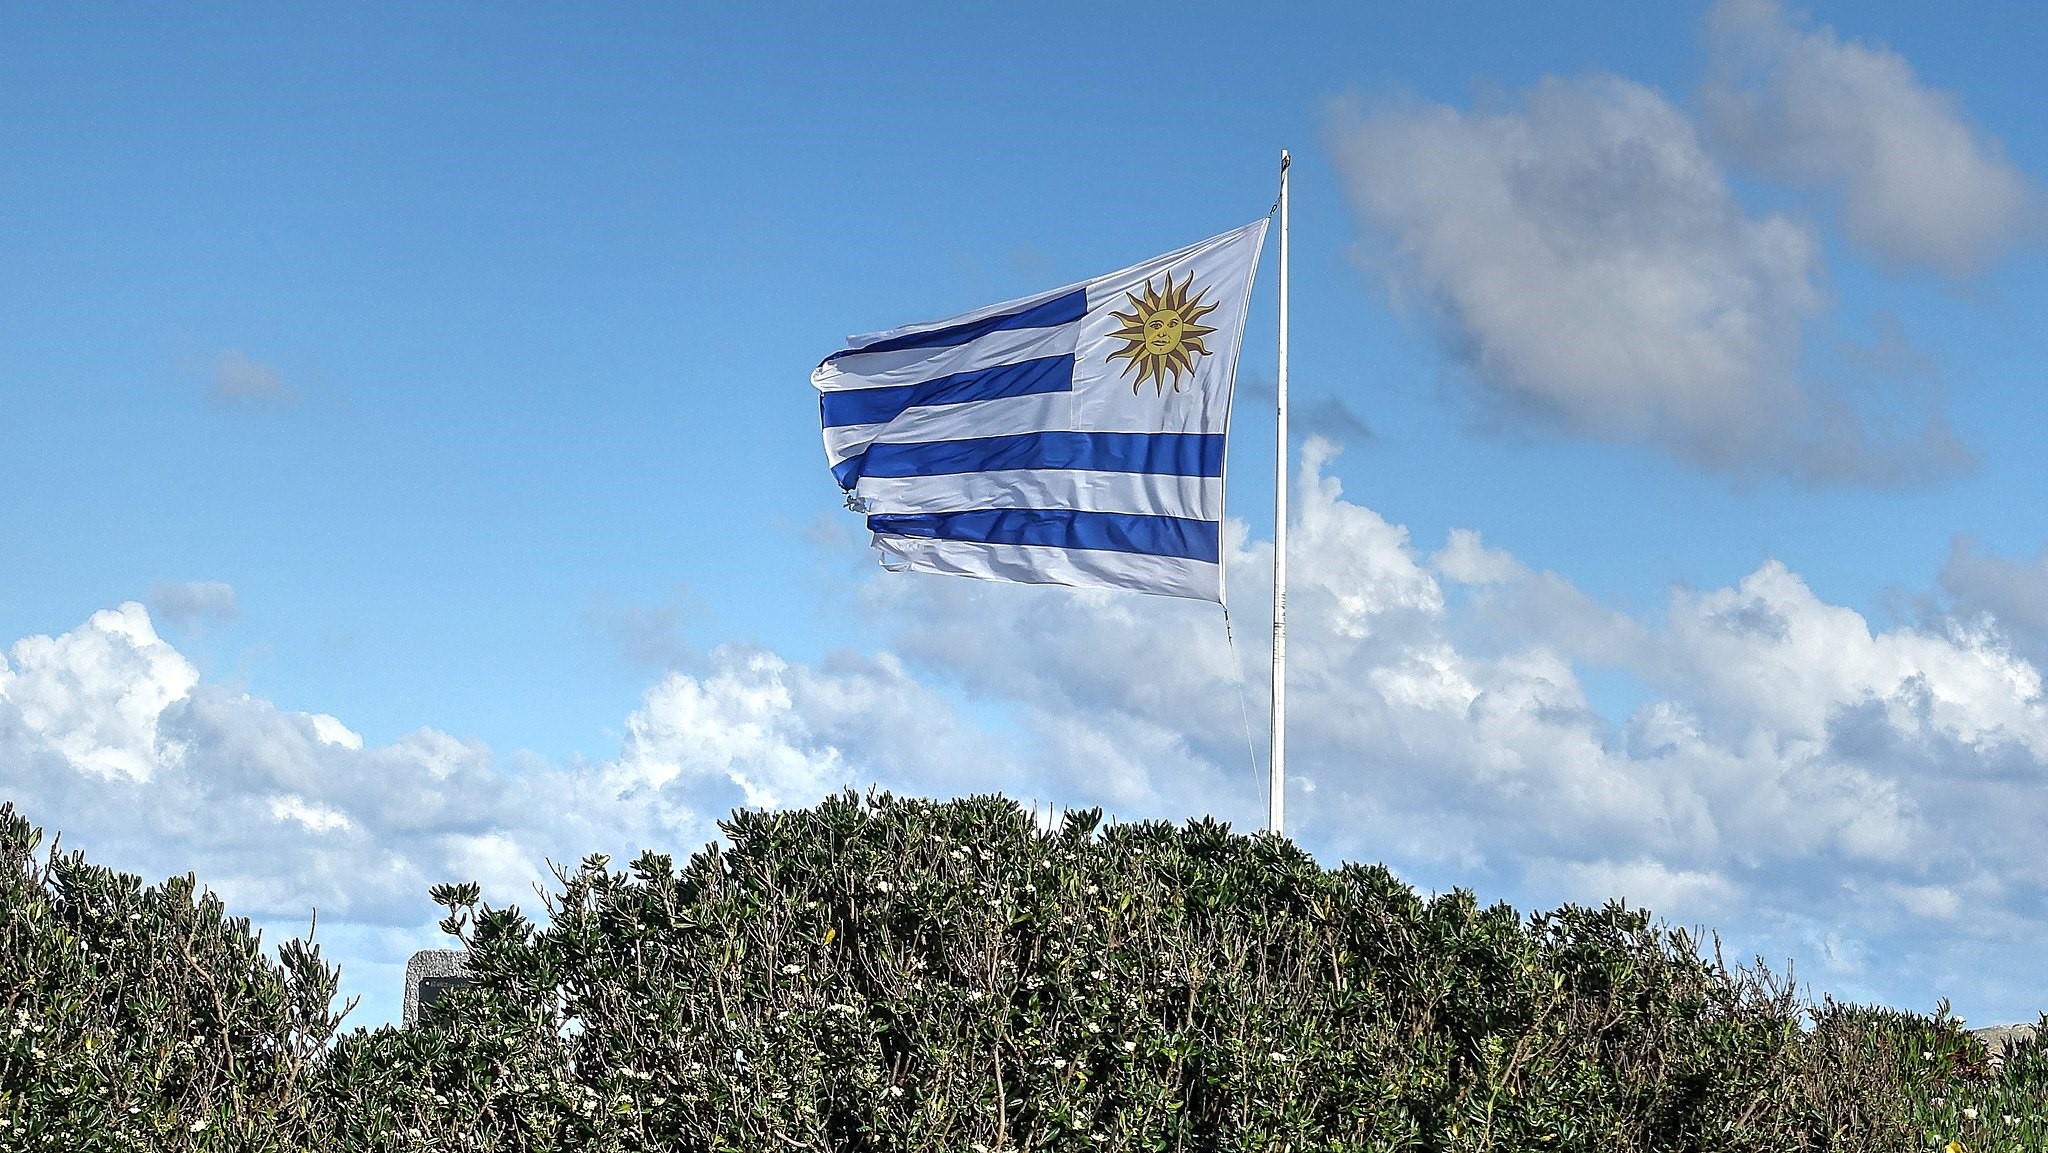 01/01/1970 Bandera de Uruguay.
ECONOMIA ESPAÑA EUROPA MADRID INTERNACIONAL
FLICKR / RAÚL ALEJANDRO RODRÍGUEZ
